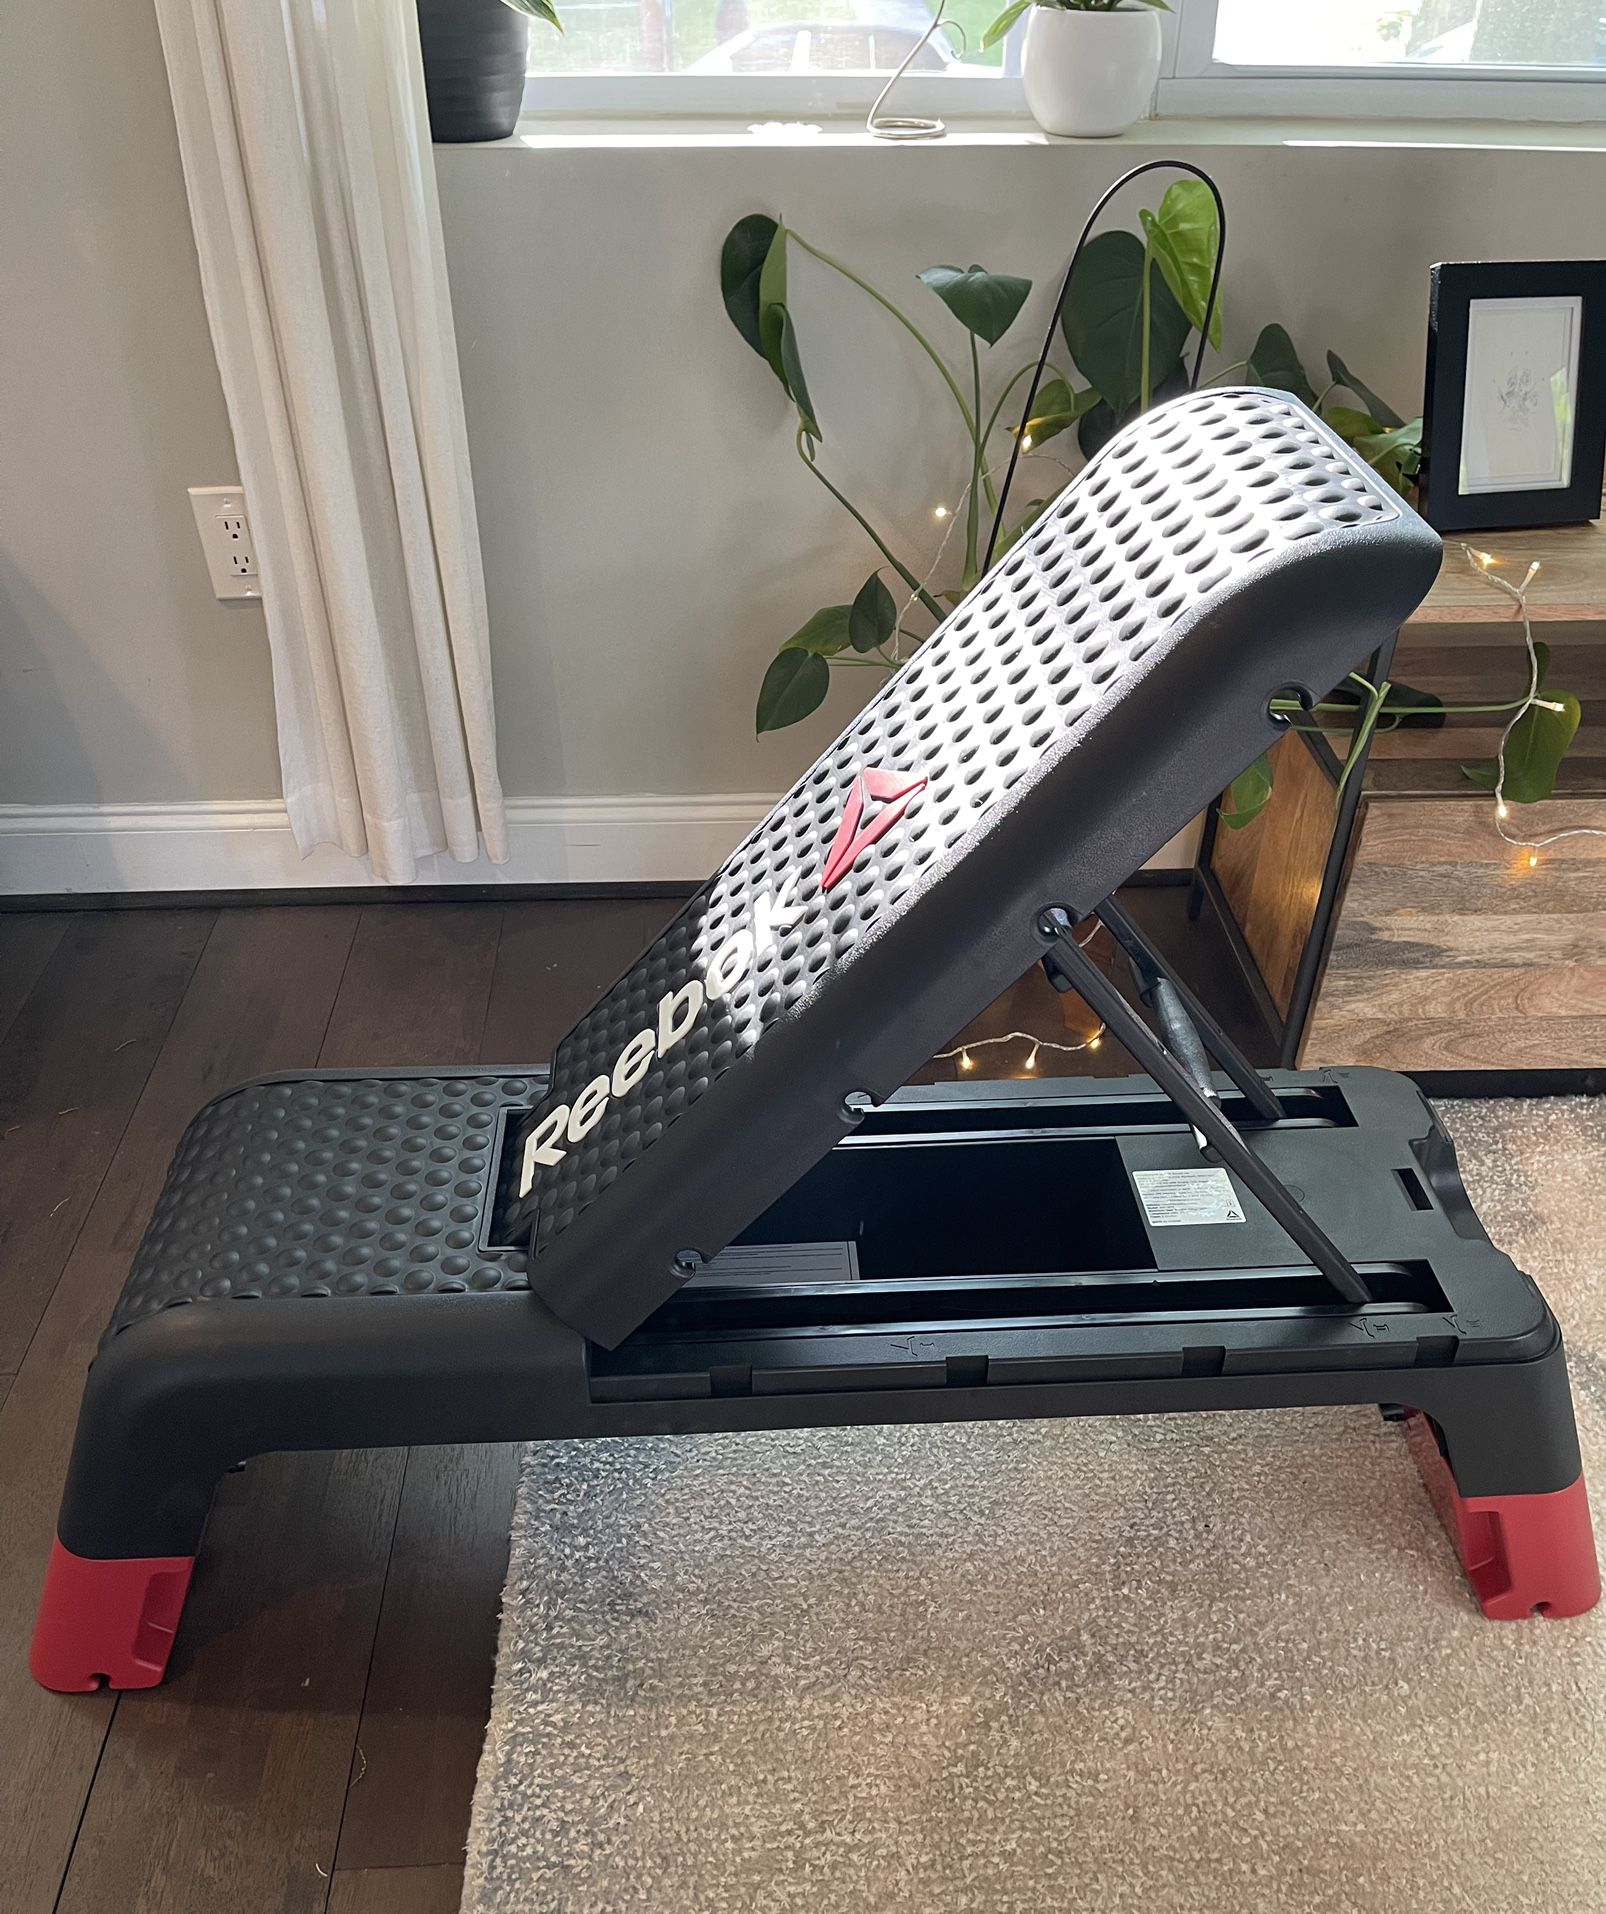 Brand New Reebok Deck - Workout Bench